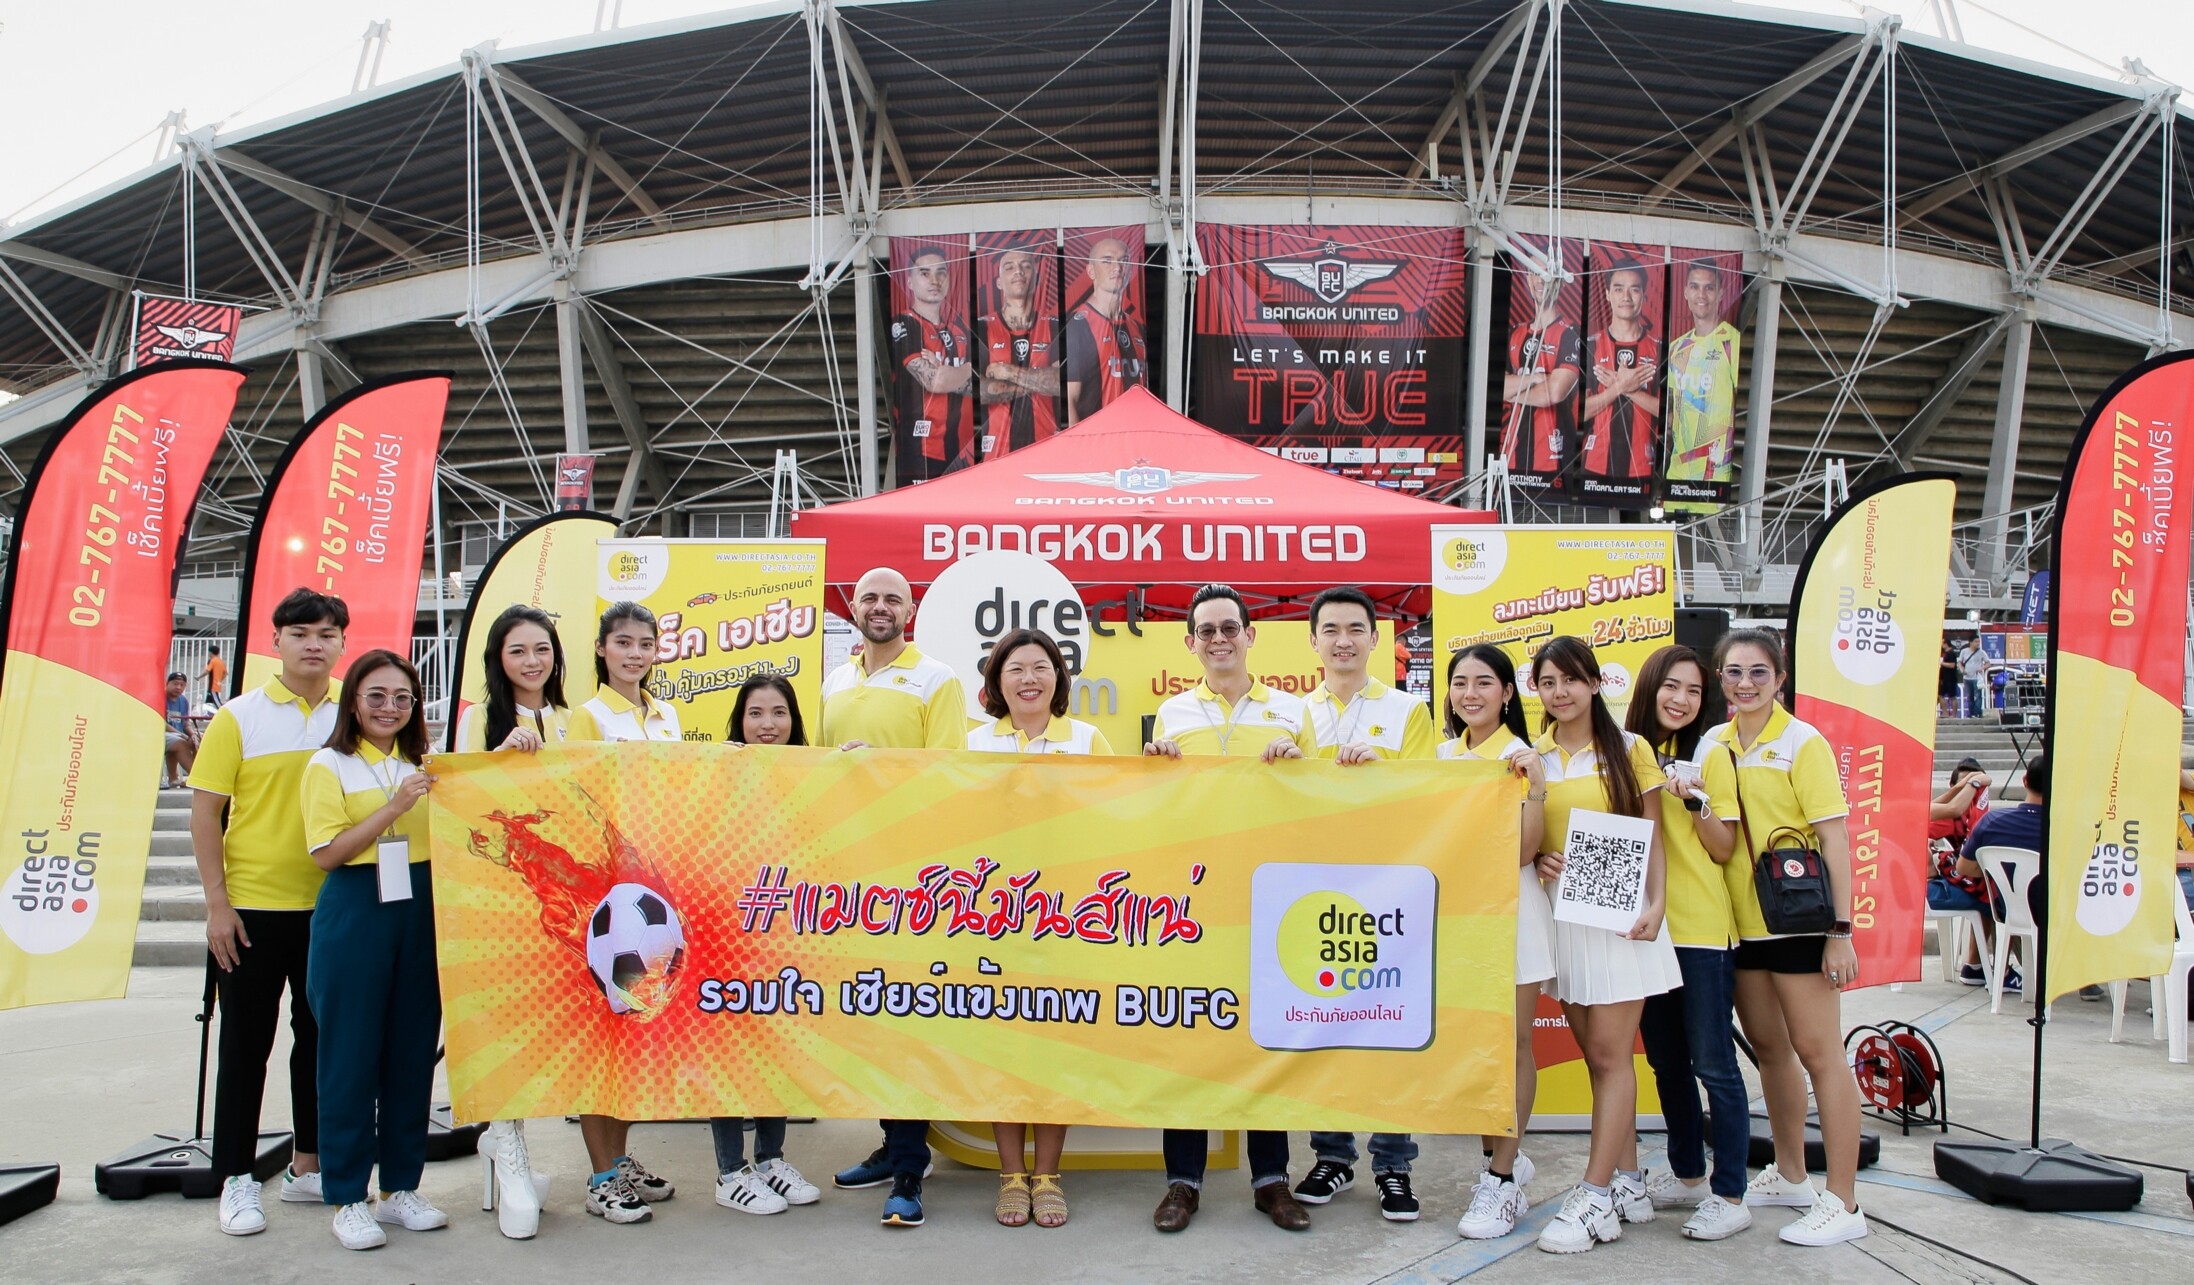 ครั้งแรกในไทย! ไดเร็ค เอเชีย  “แจกก่อนไม่รอซื้อ” กับ “บริการช่วยเหลือฉุกเฉินบนท้องถนน” (Roadside Assistance) ที่มาเปิดตัวในงานฟุตบอลไทยลีก 2020 หวังให้คนไทยอุ่นใจแม้ในวันวิกฤต